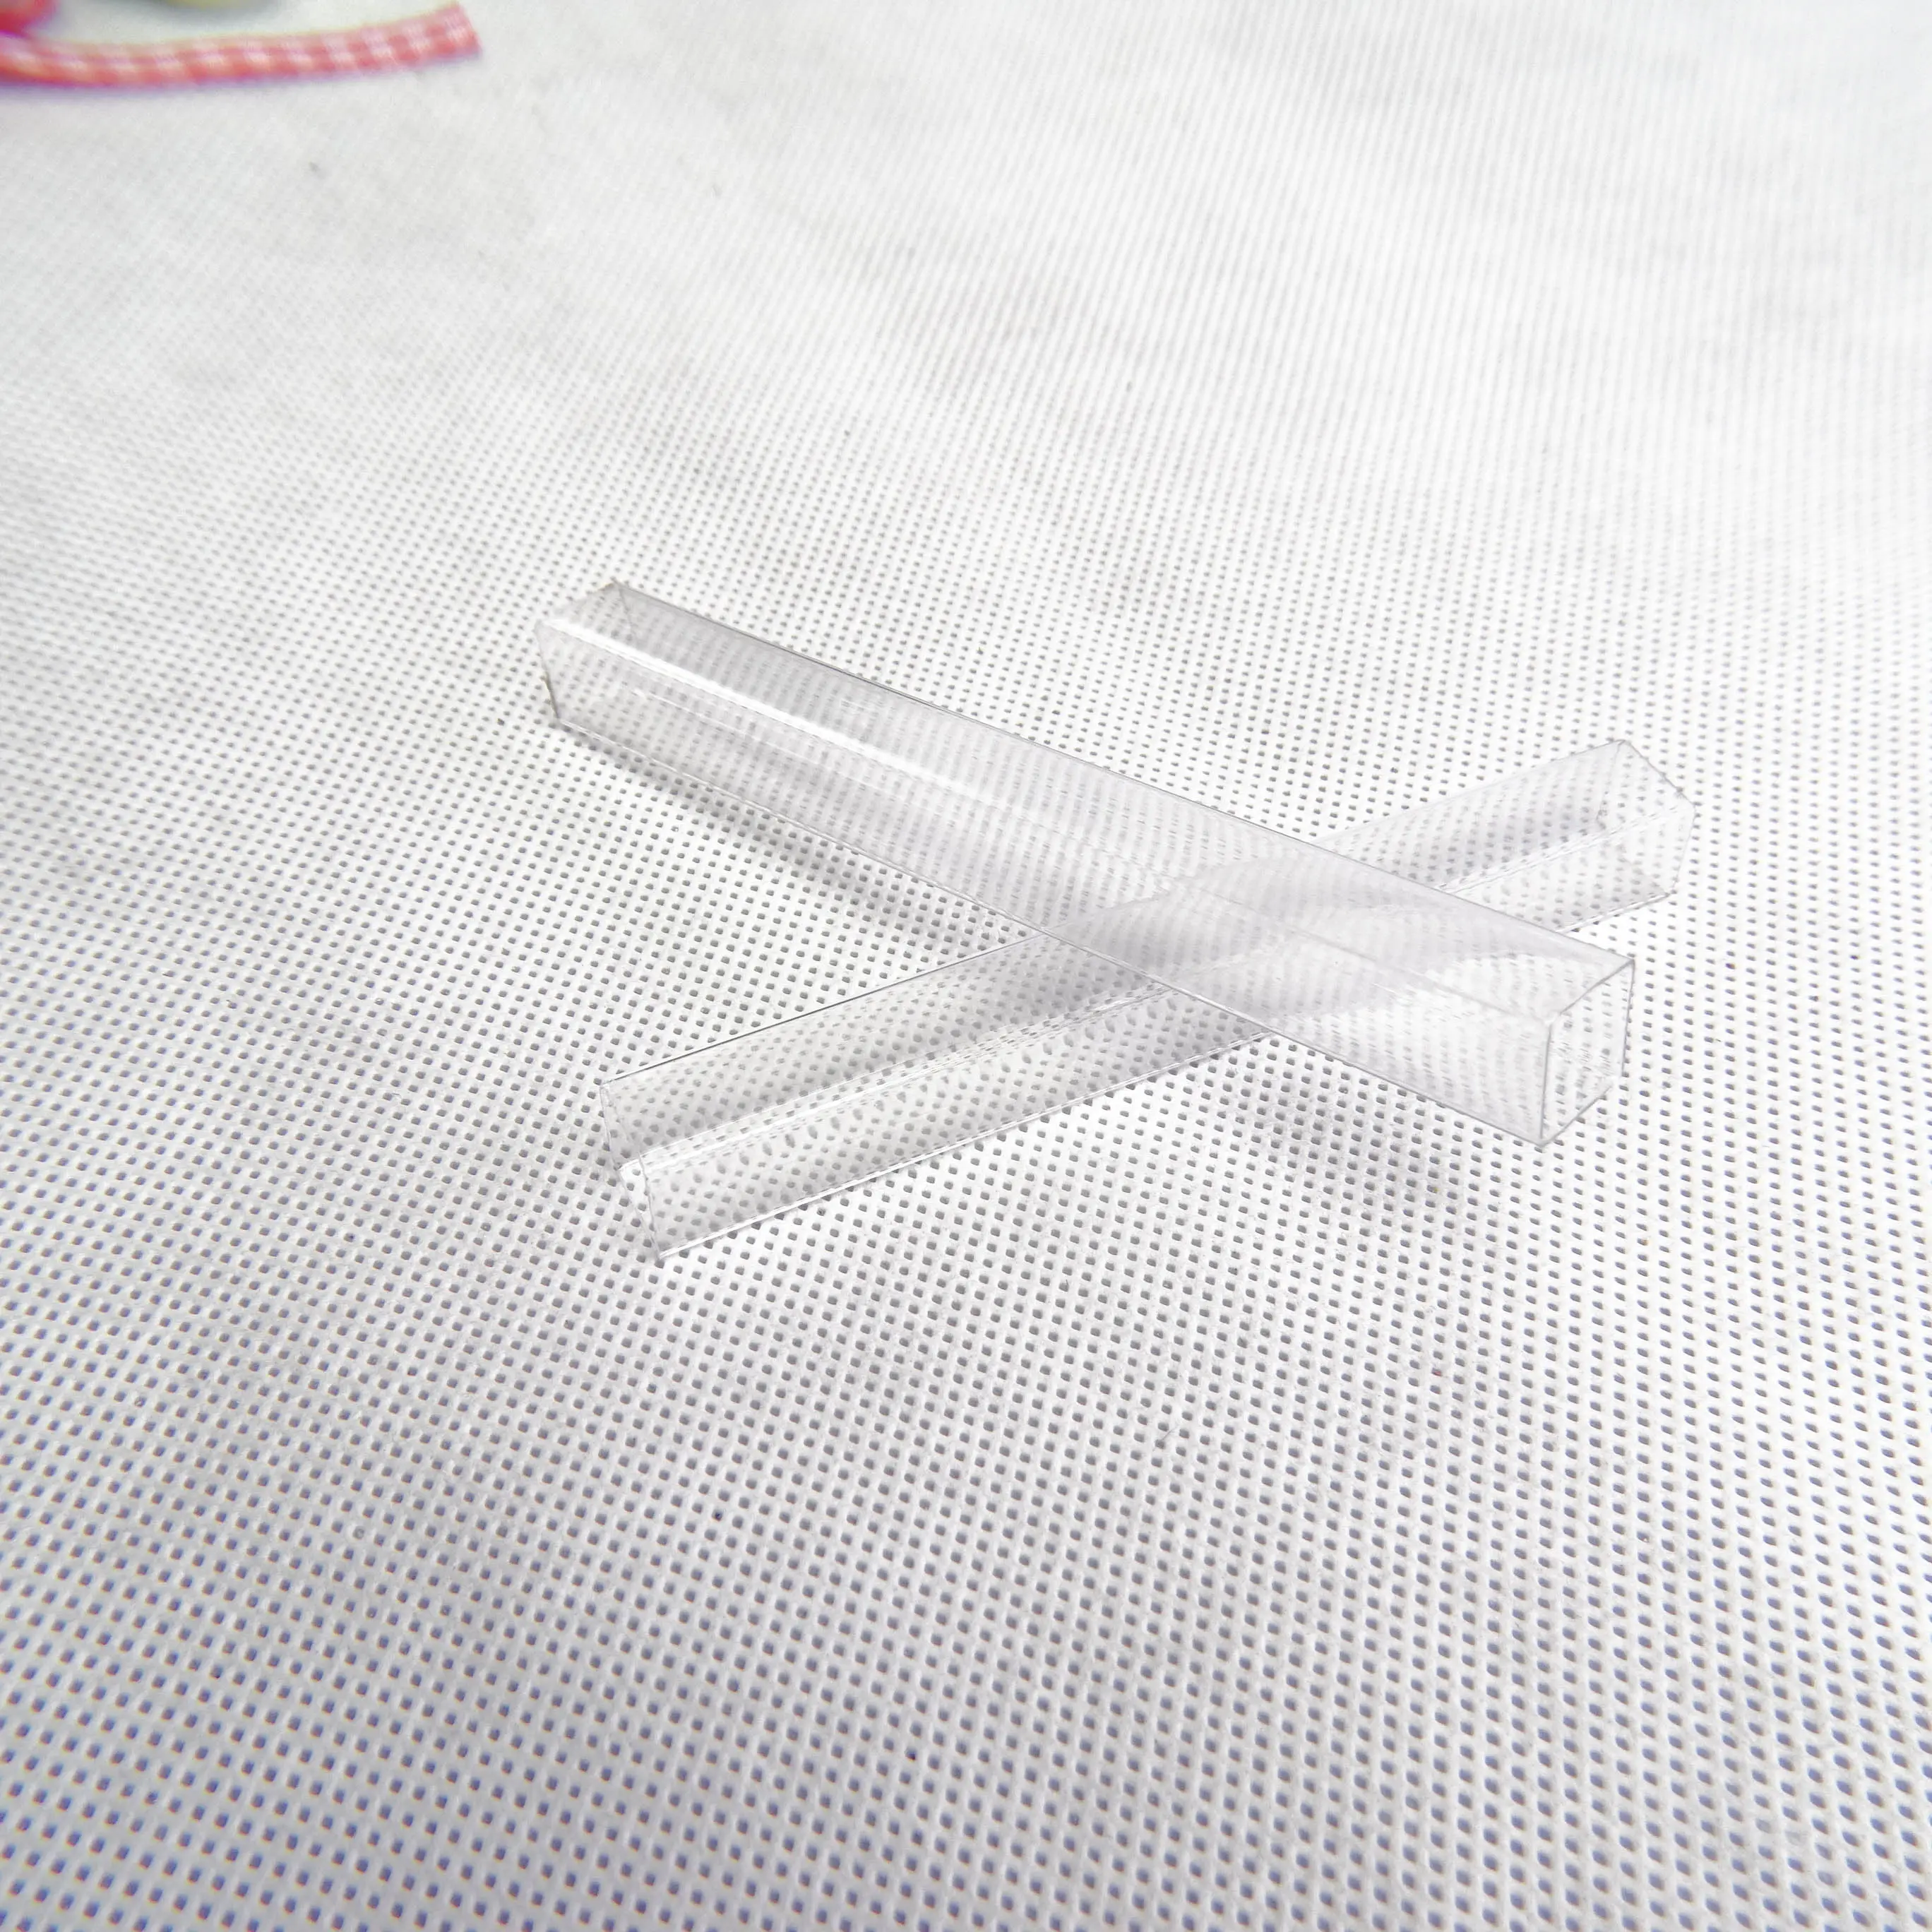 Ống nhựa trong suốt bao bì vuông với chiều dài cạnh 20.5mm có thể xử lý in và dán